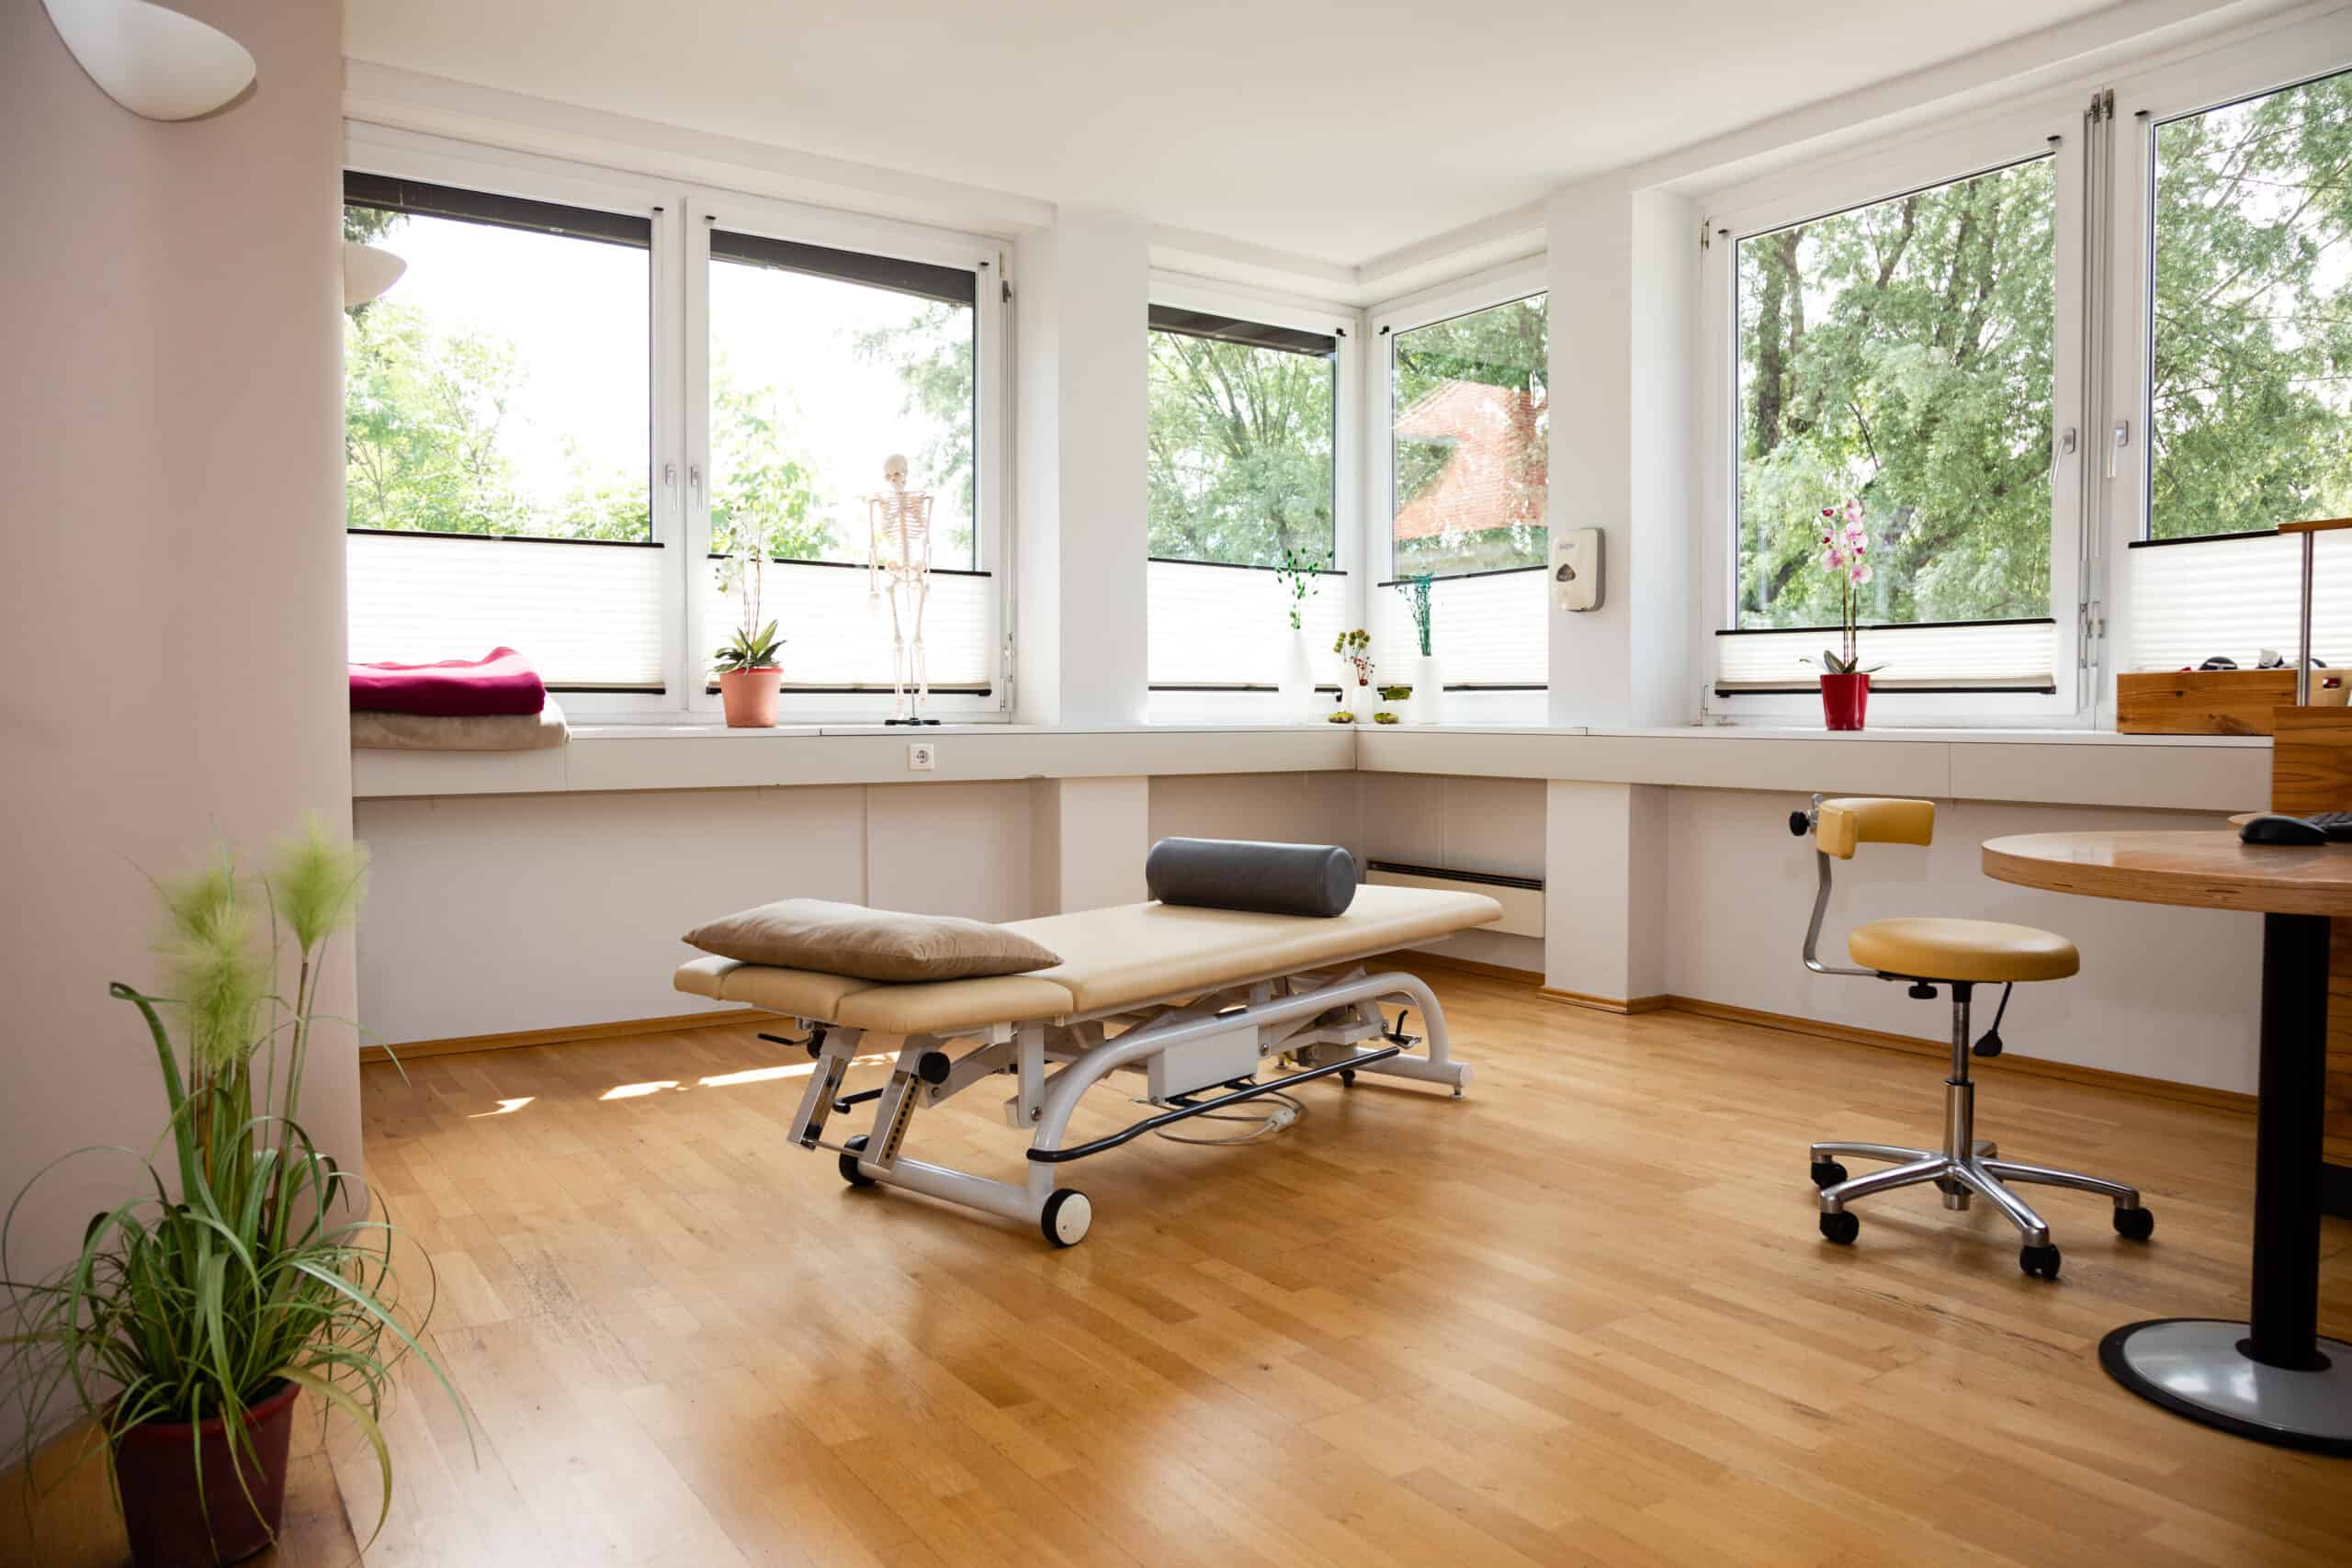 Behandlungsraum mit weitläufigem Holzboden und einer beige-farbenen Behandlungsliege